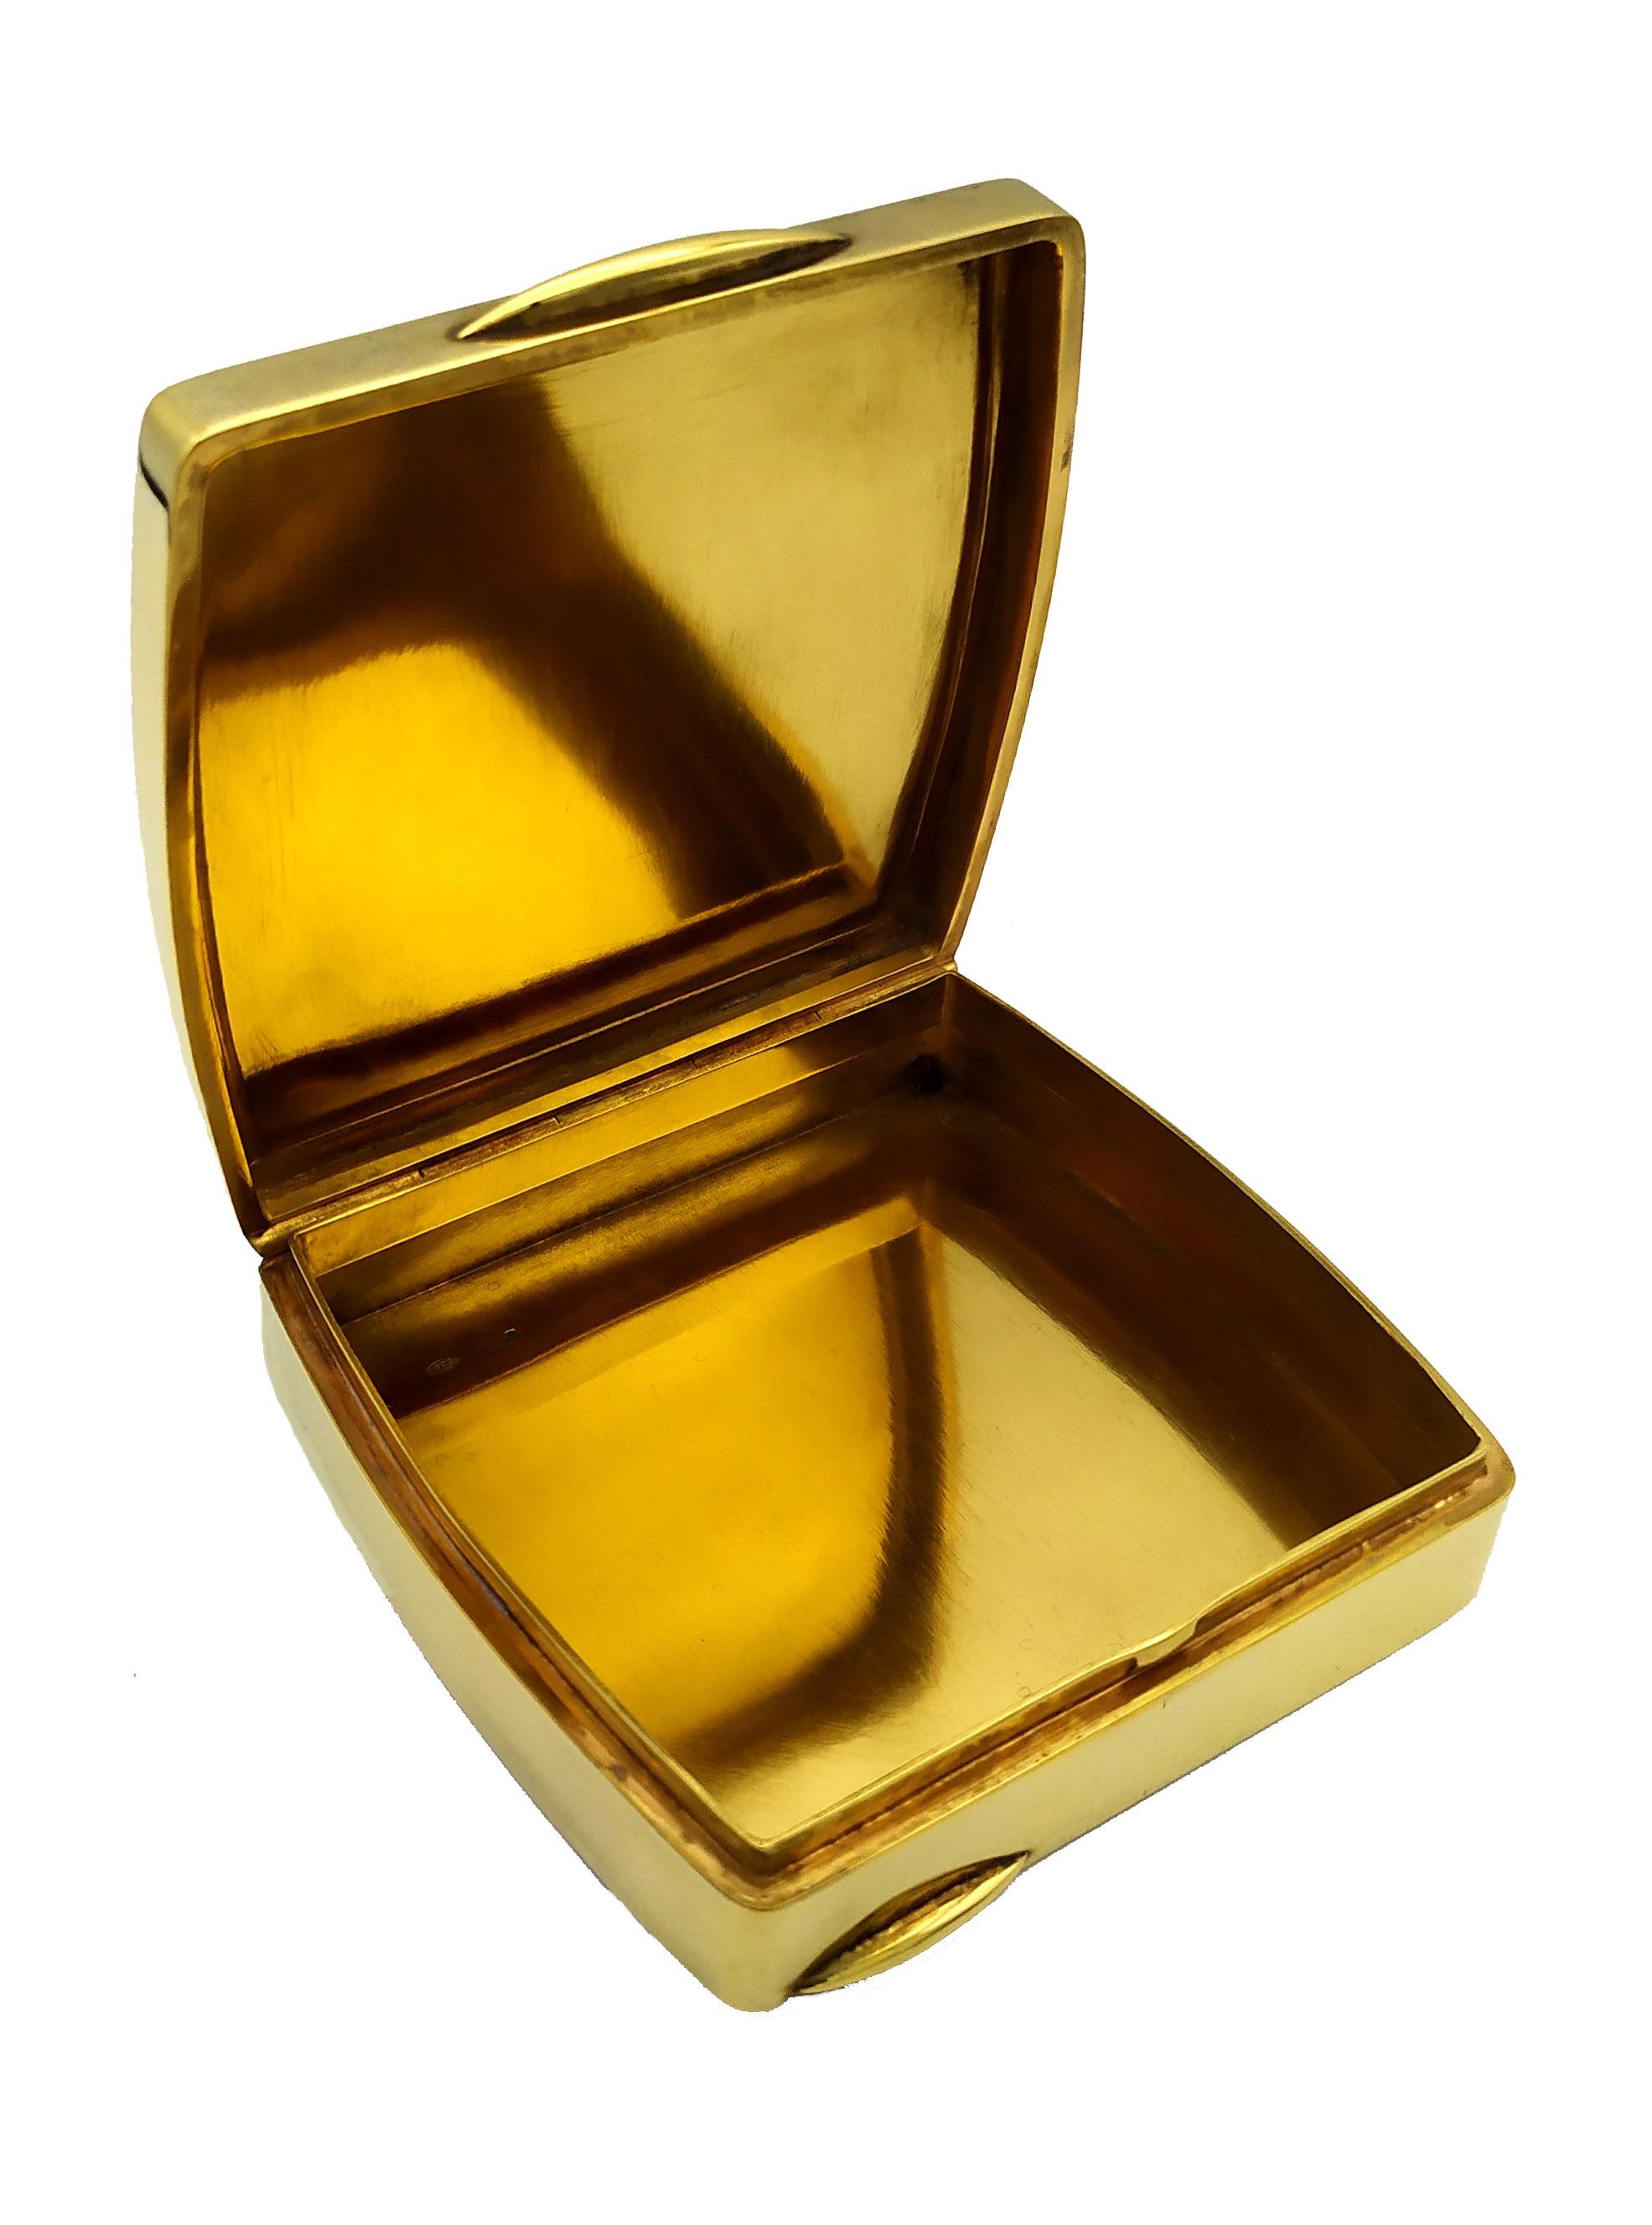 Tabatière carrée à deux faces légèrement bombées en argent sterling 925/1000 doré à l'or fin avec émail cuit translucide sur guillochè et miniature de bouquet de fleurs peinte à la main, de style Art nouveau viennois de la fin du XIXe siècle, avec